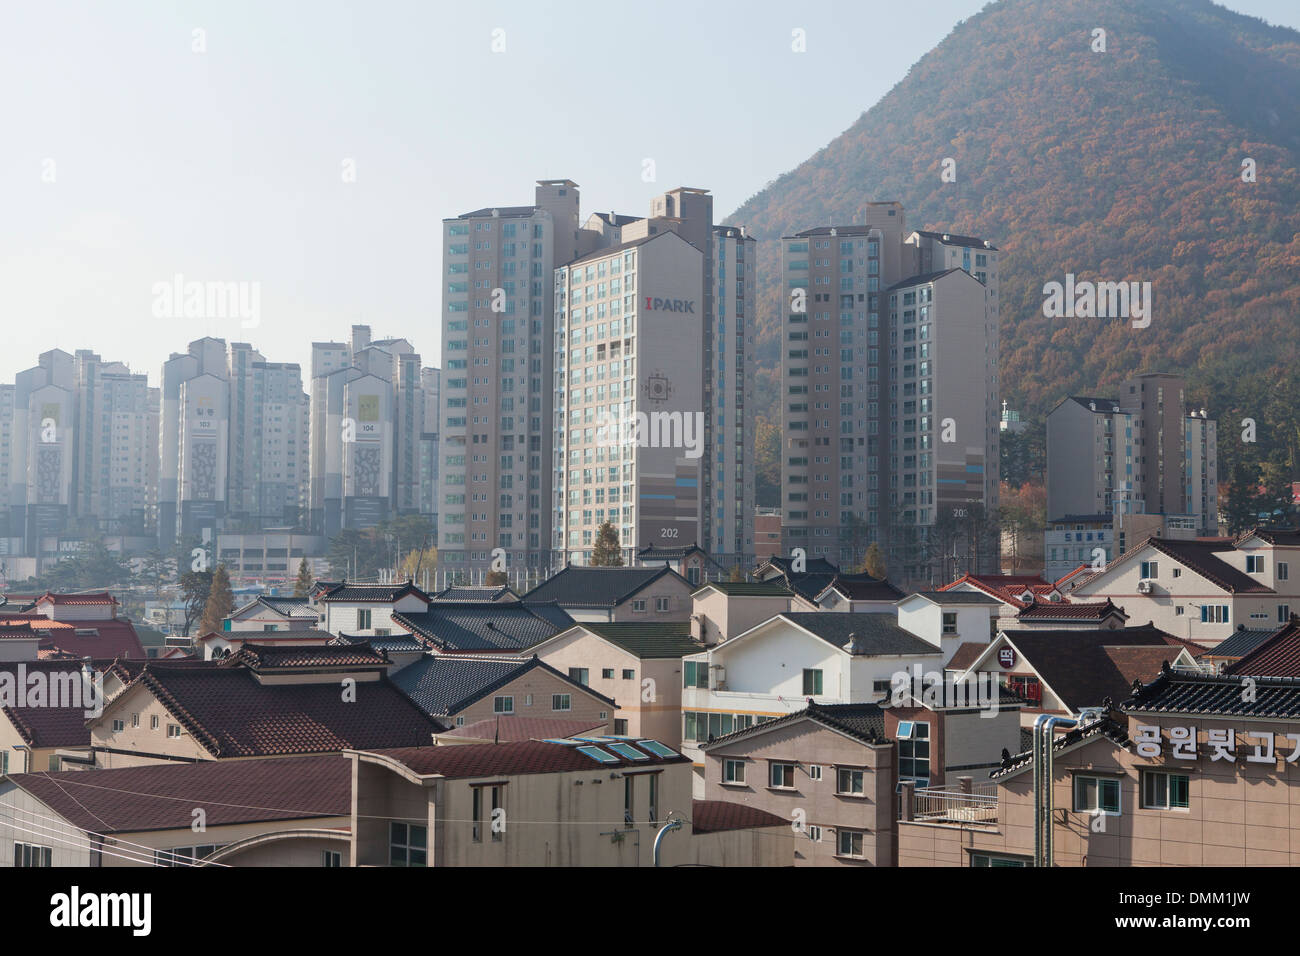 Los nuevos altos multi-vivienda complejas entre las casas unifamiliares tradicionales - Gimhae, Corea del Sur Foto de stock